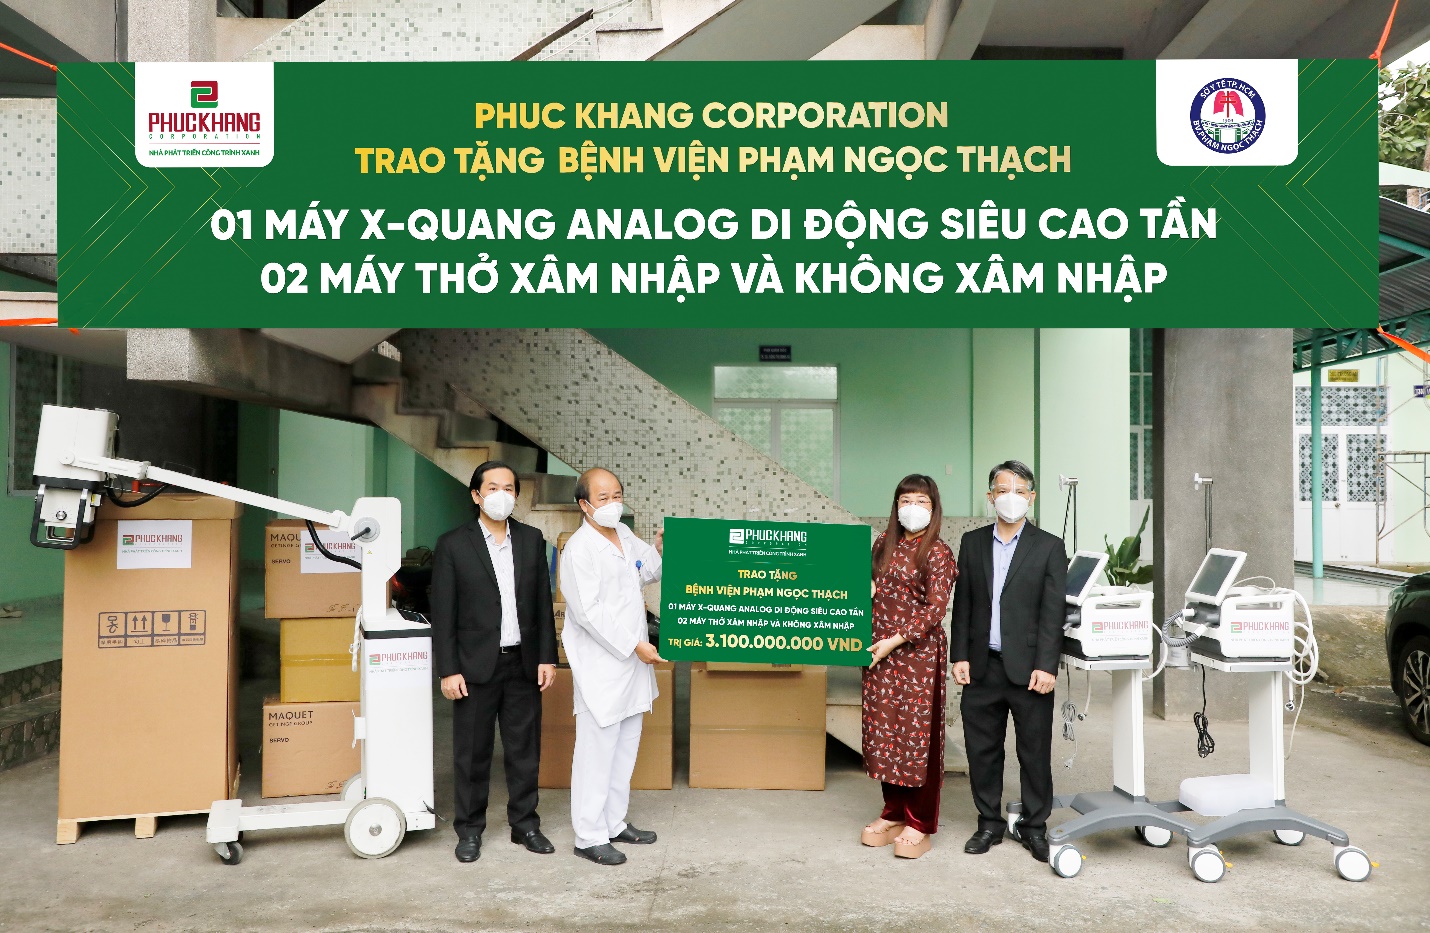 Lãnh đạo Phuc Khang Corporation trao tặng thiết bị cho đại diện của BV Phạm Ngọc Thạch